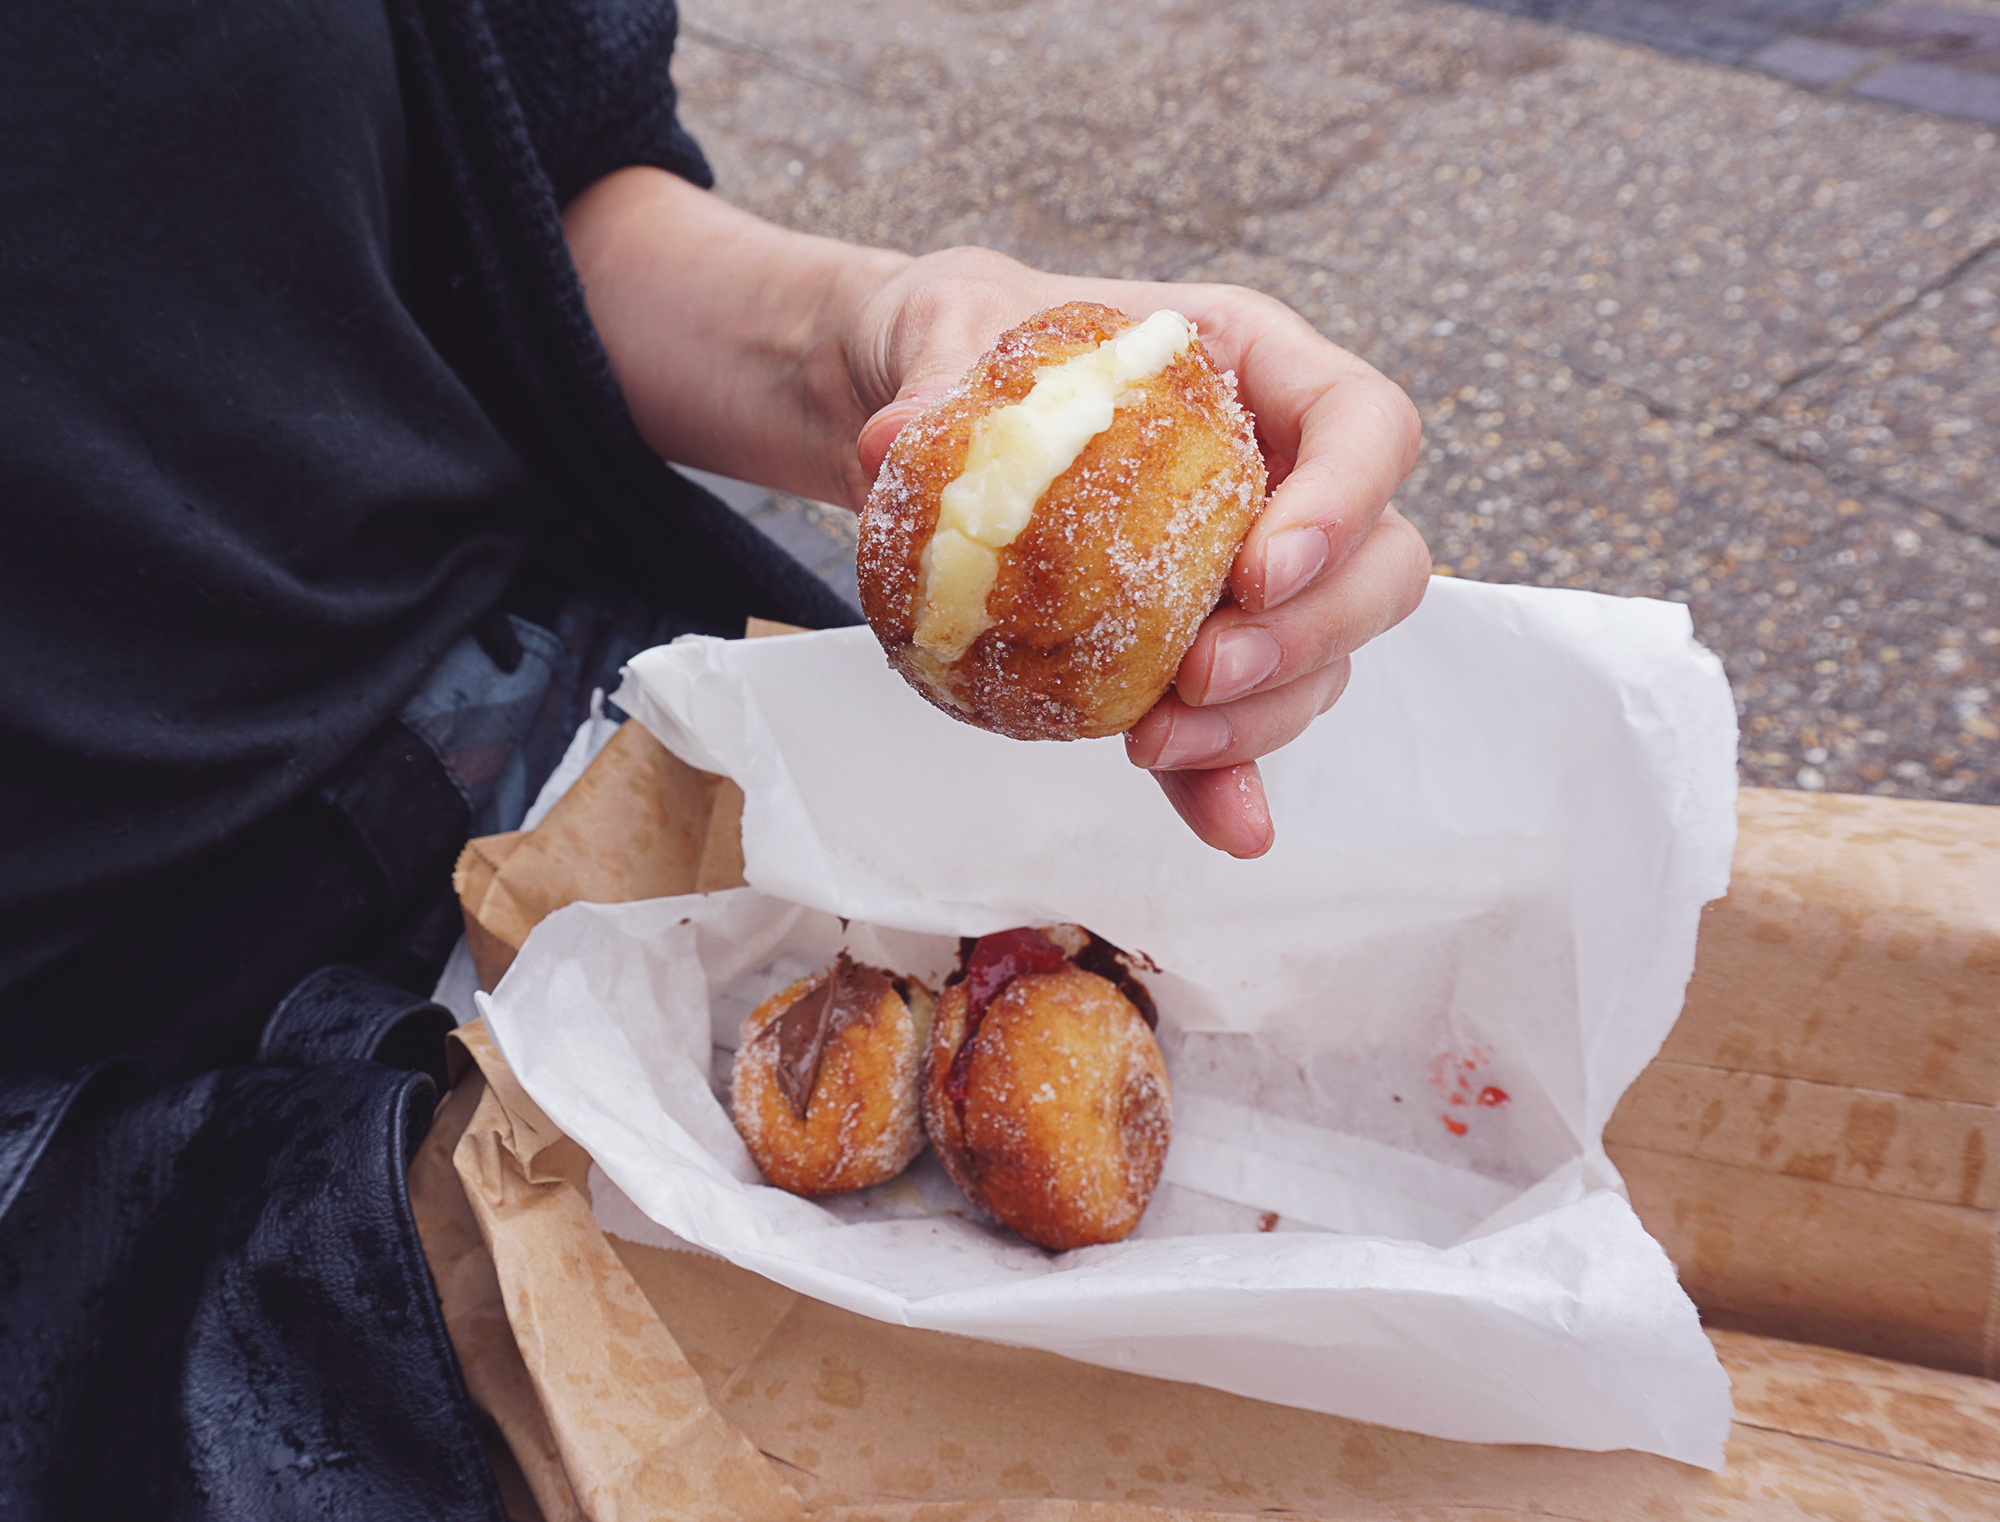 Gluten free doughnuts from Floris Foods | Floris Bakery | gluten free Broadway Market guide | Hackney, London